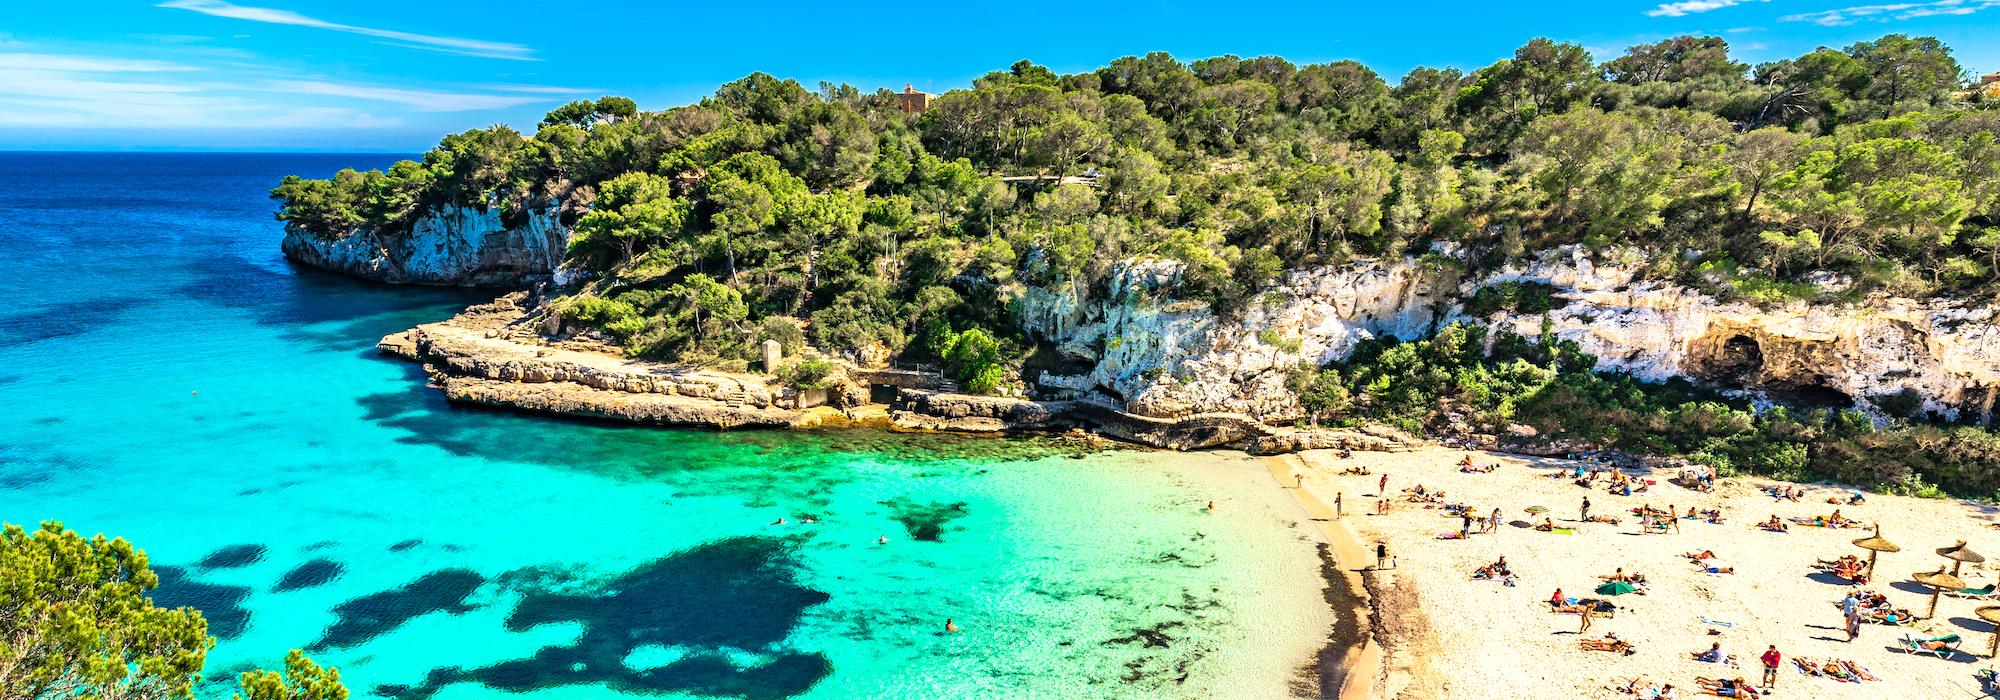 Cala Llombards Santanyi beach, Majorca